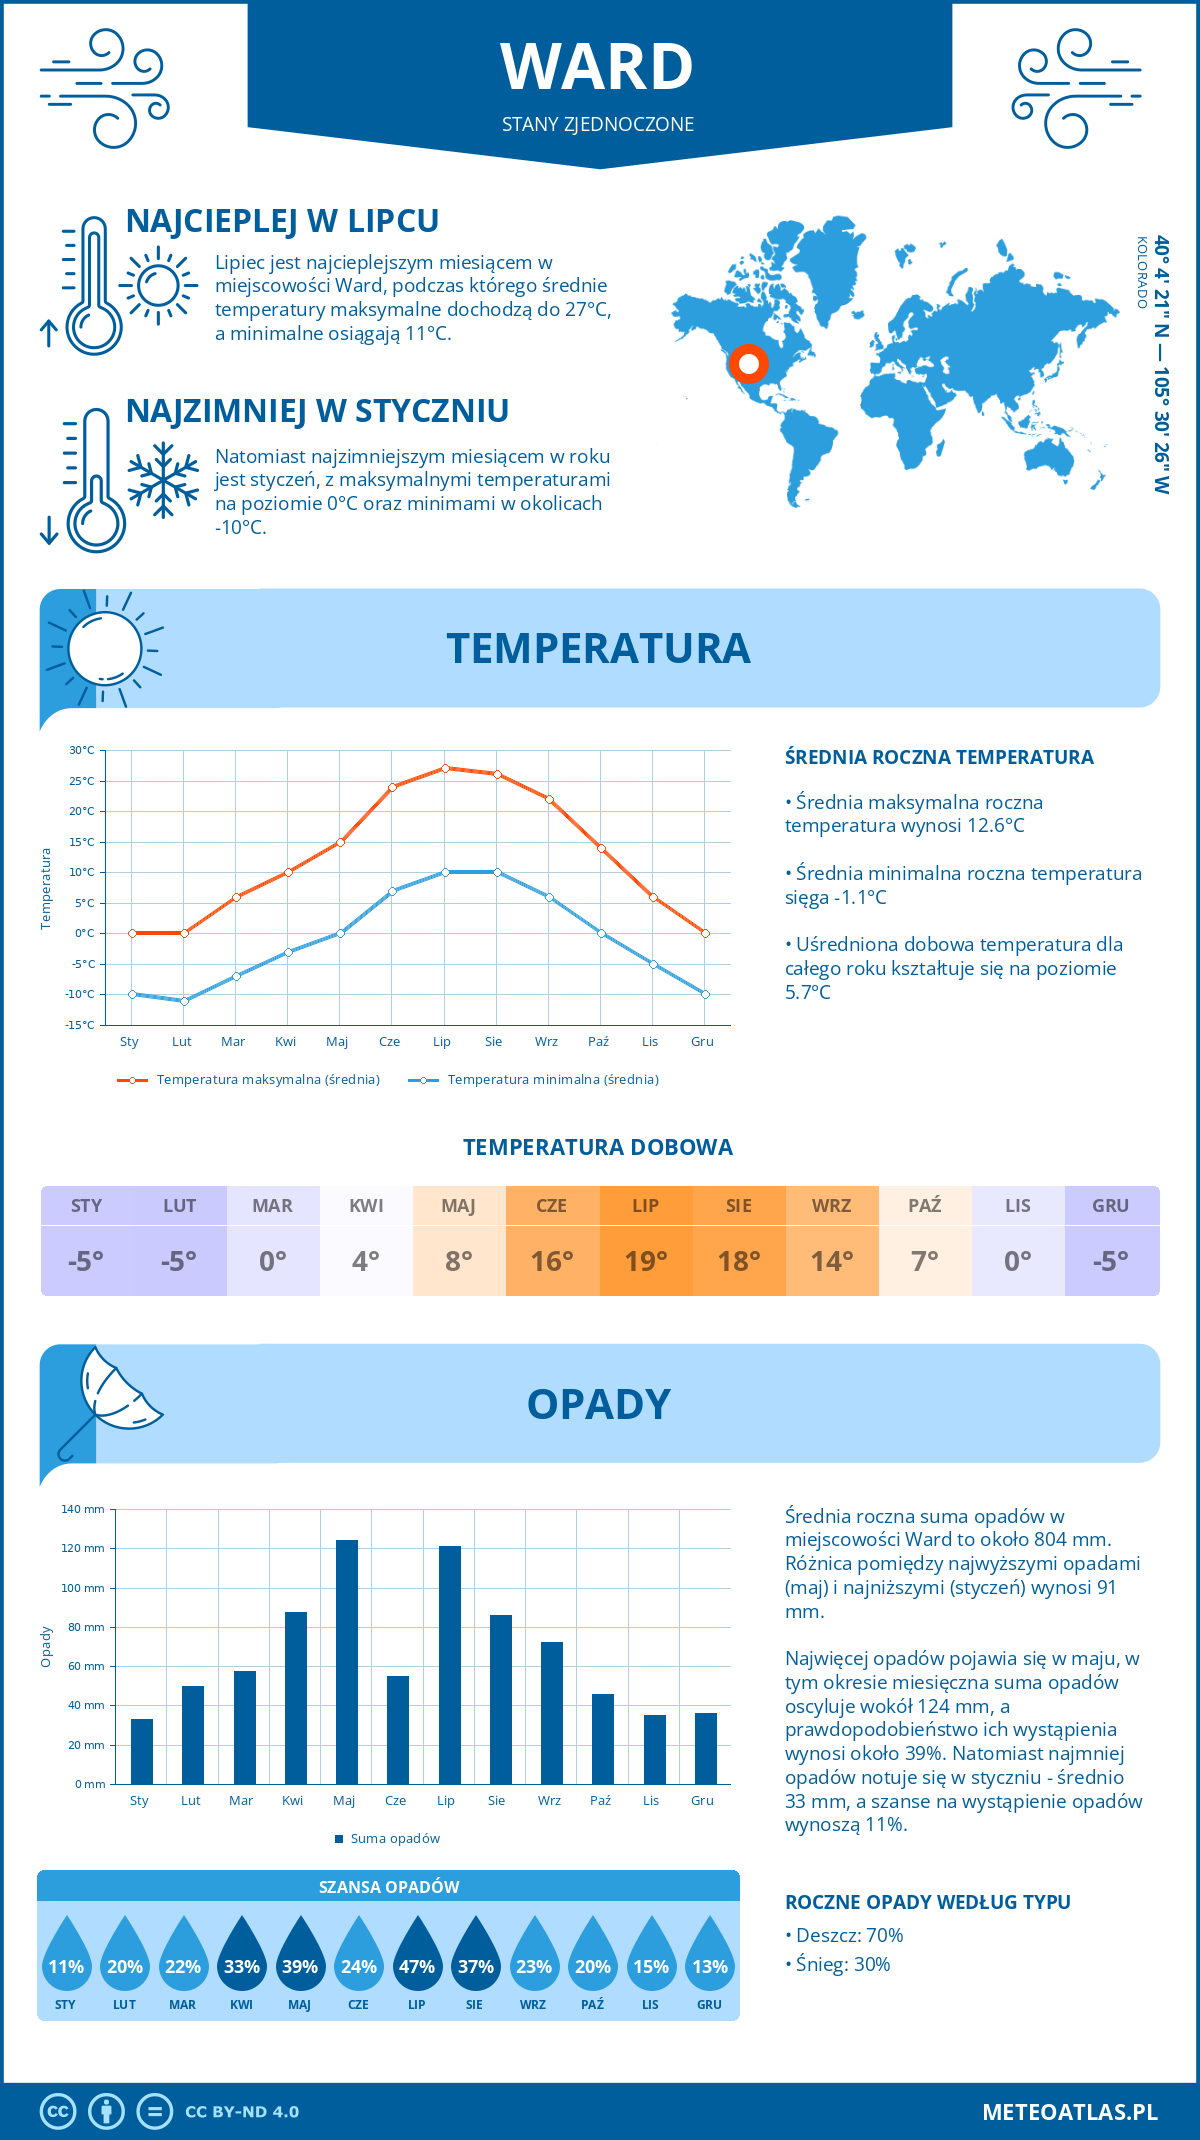 Pogoda Ward (Stany Zjednoczone). Temperatura oraz opady.